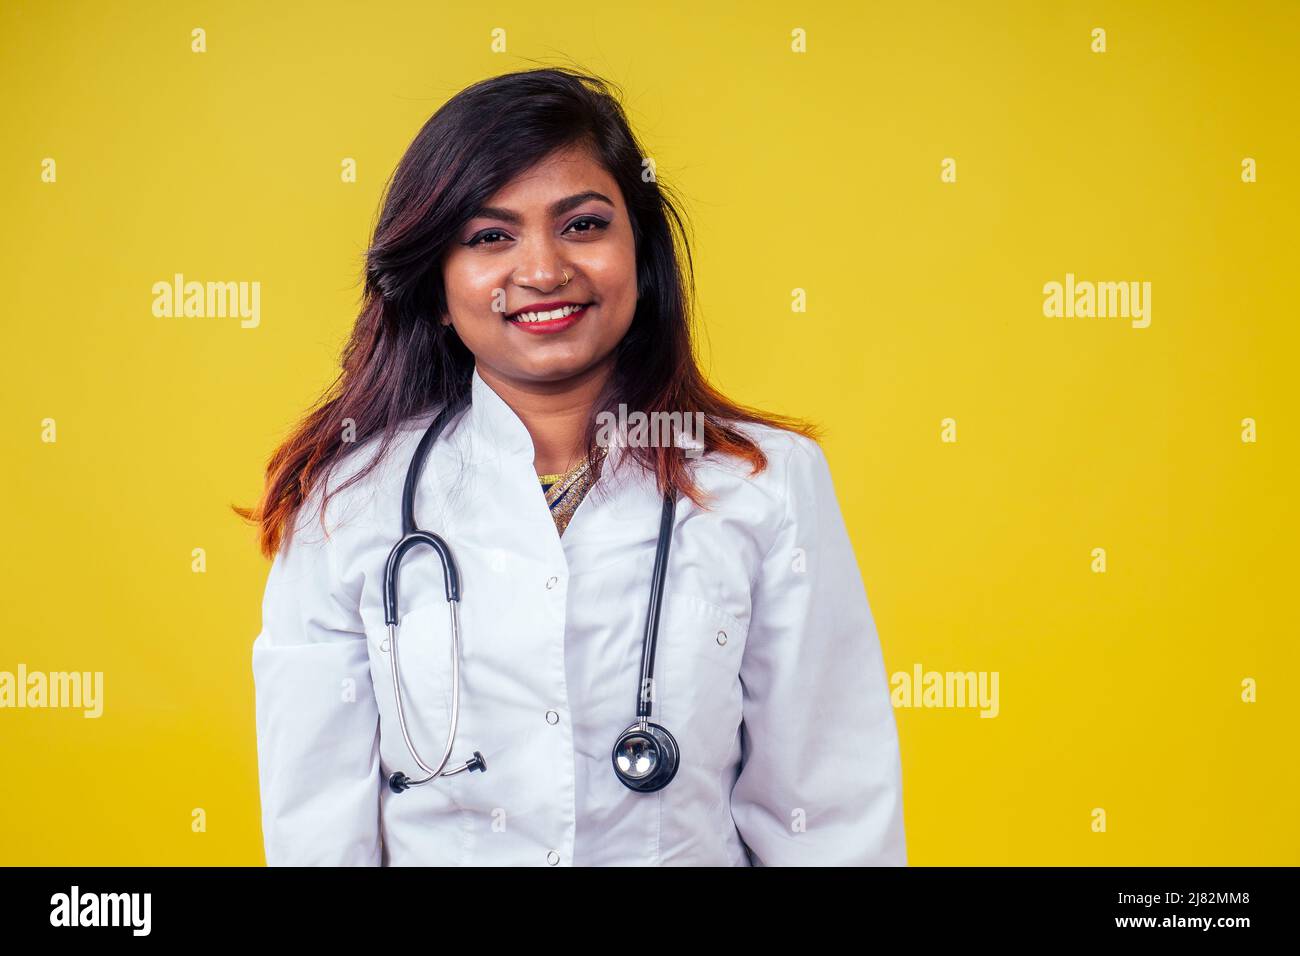 Femme indienne jeune et belle blonde femme gynécologue médecin utilisant le stéthoscope dans un manteau médical blanc sur un fond jaune dans le studio Banque D'Images